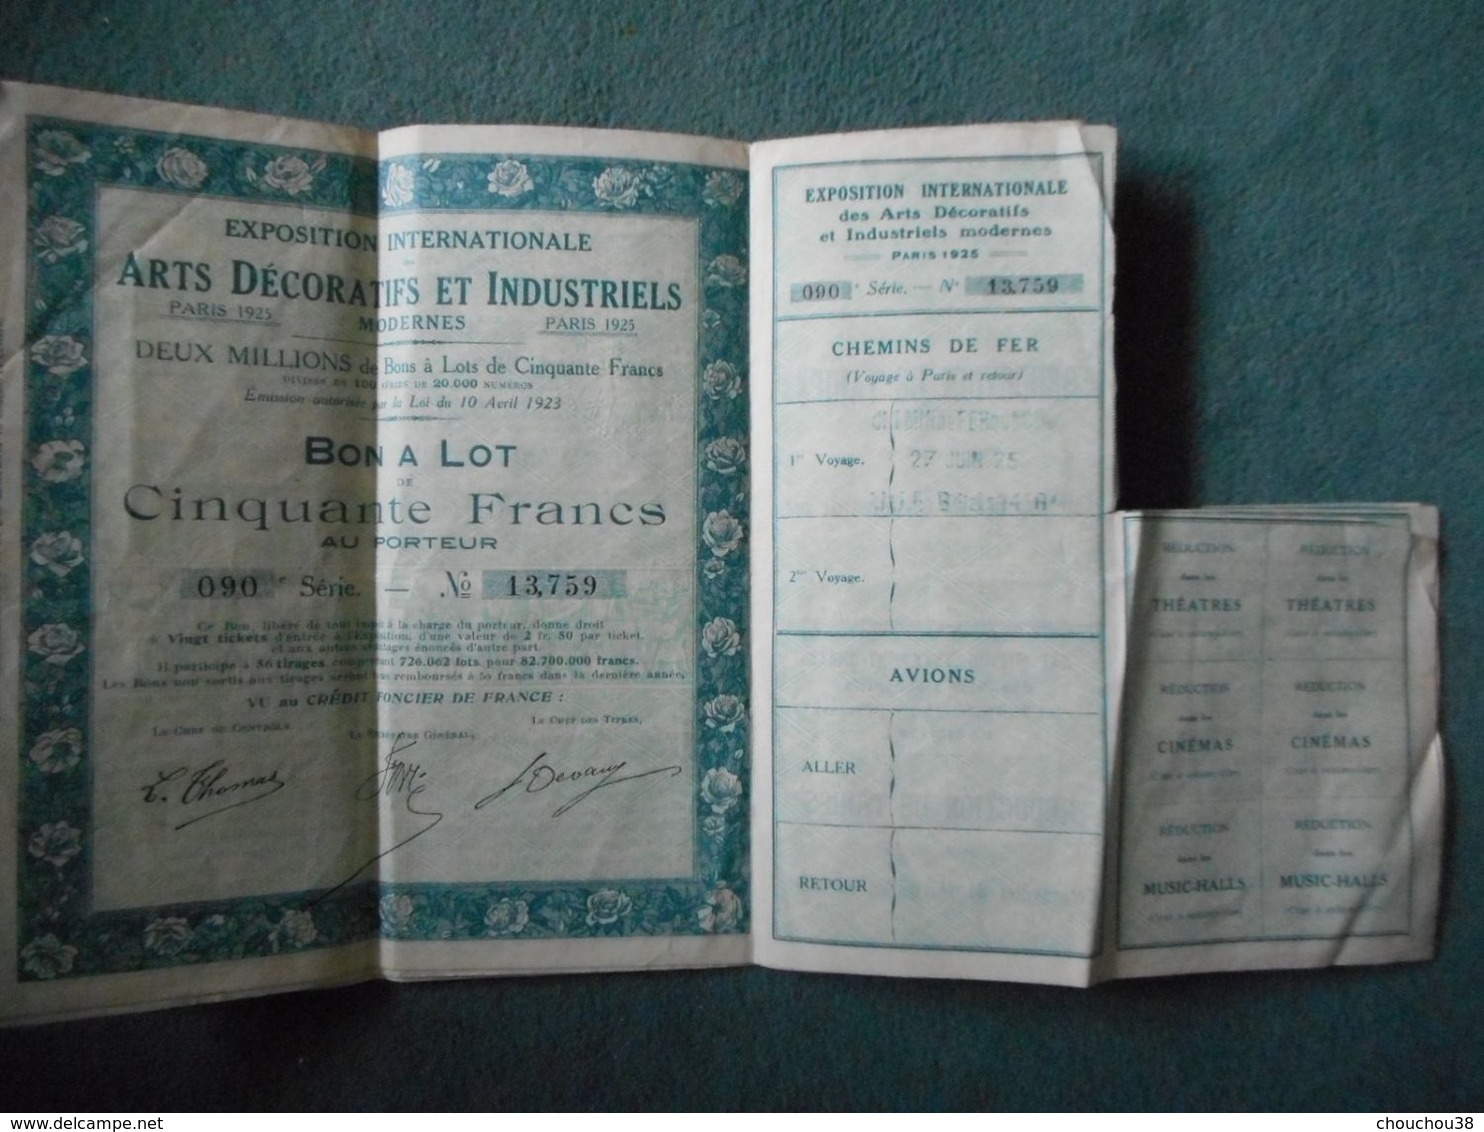 3 Bons à Lot 50 Francs  ARTS DECORATIFS & INDUSTRIELS - 1923 - Cinéma & Théatre